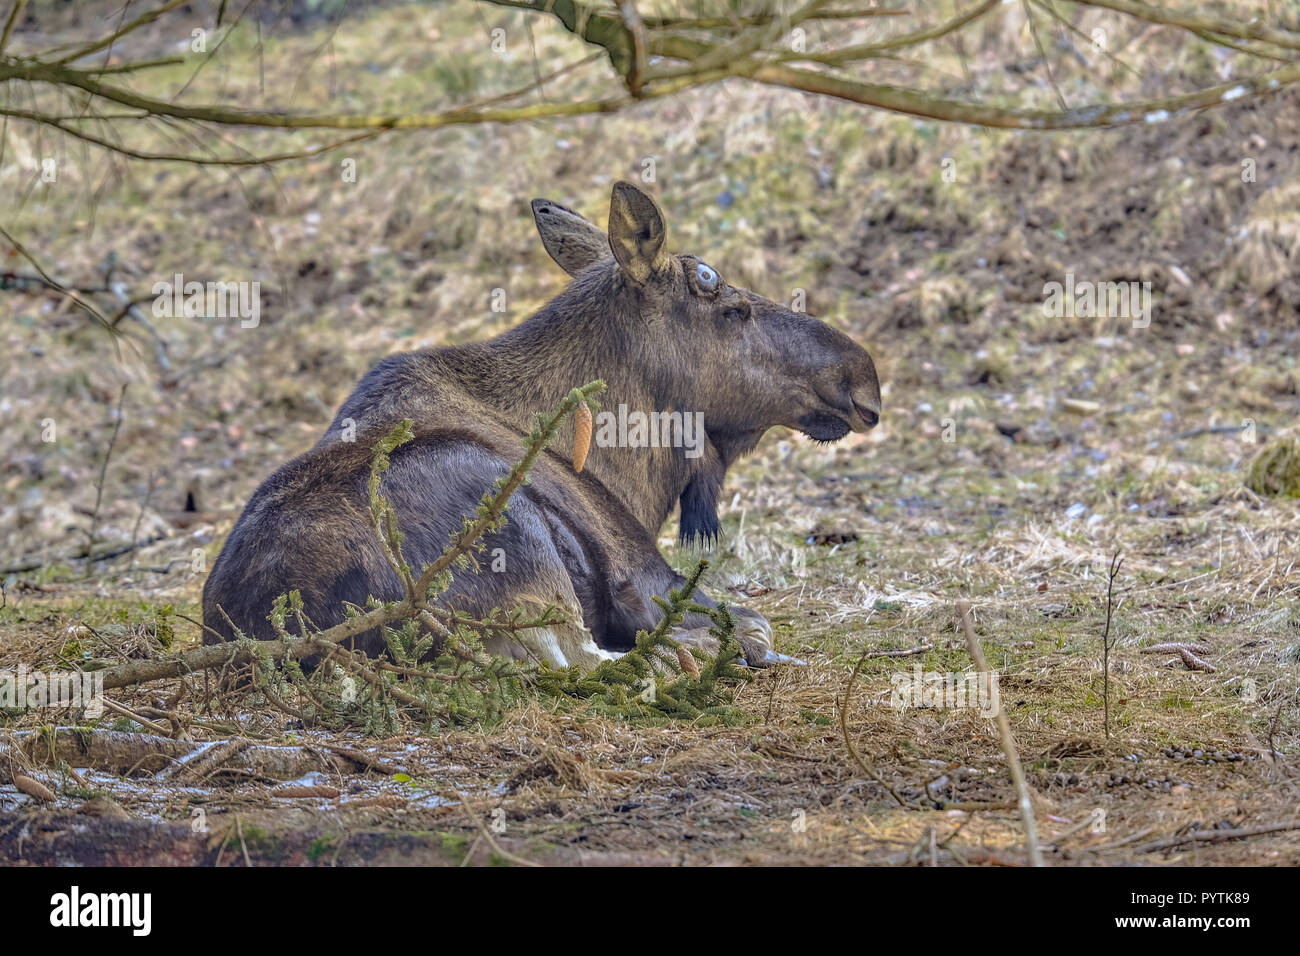 Los alces (Norteamérica) o elk (Eurasia), Alces alces, es la mayor de las especies existentes en la familia de los ciervos. Animal adulto descansando bajo el árbol. Foto de stock